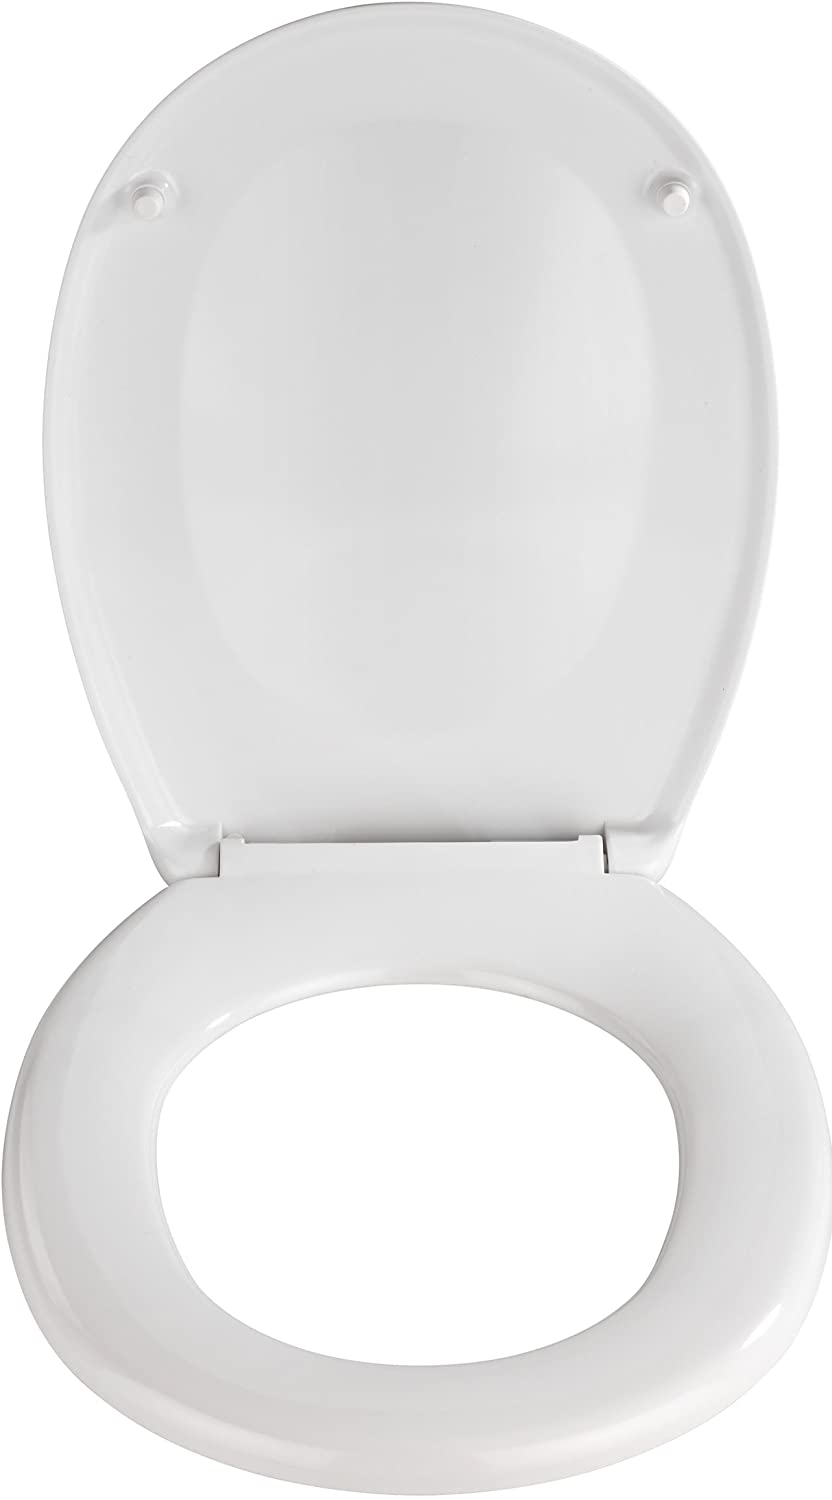 WC-Sitz Savio - Antibakterieller Toilettensitz, Easy-Close Absenkautomatik, verchromte Kunststoff-Befestigung, Duroplast, 35 x 44.5 cm, Weiß